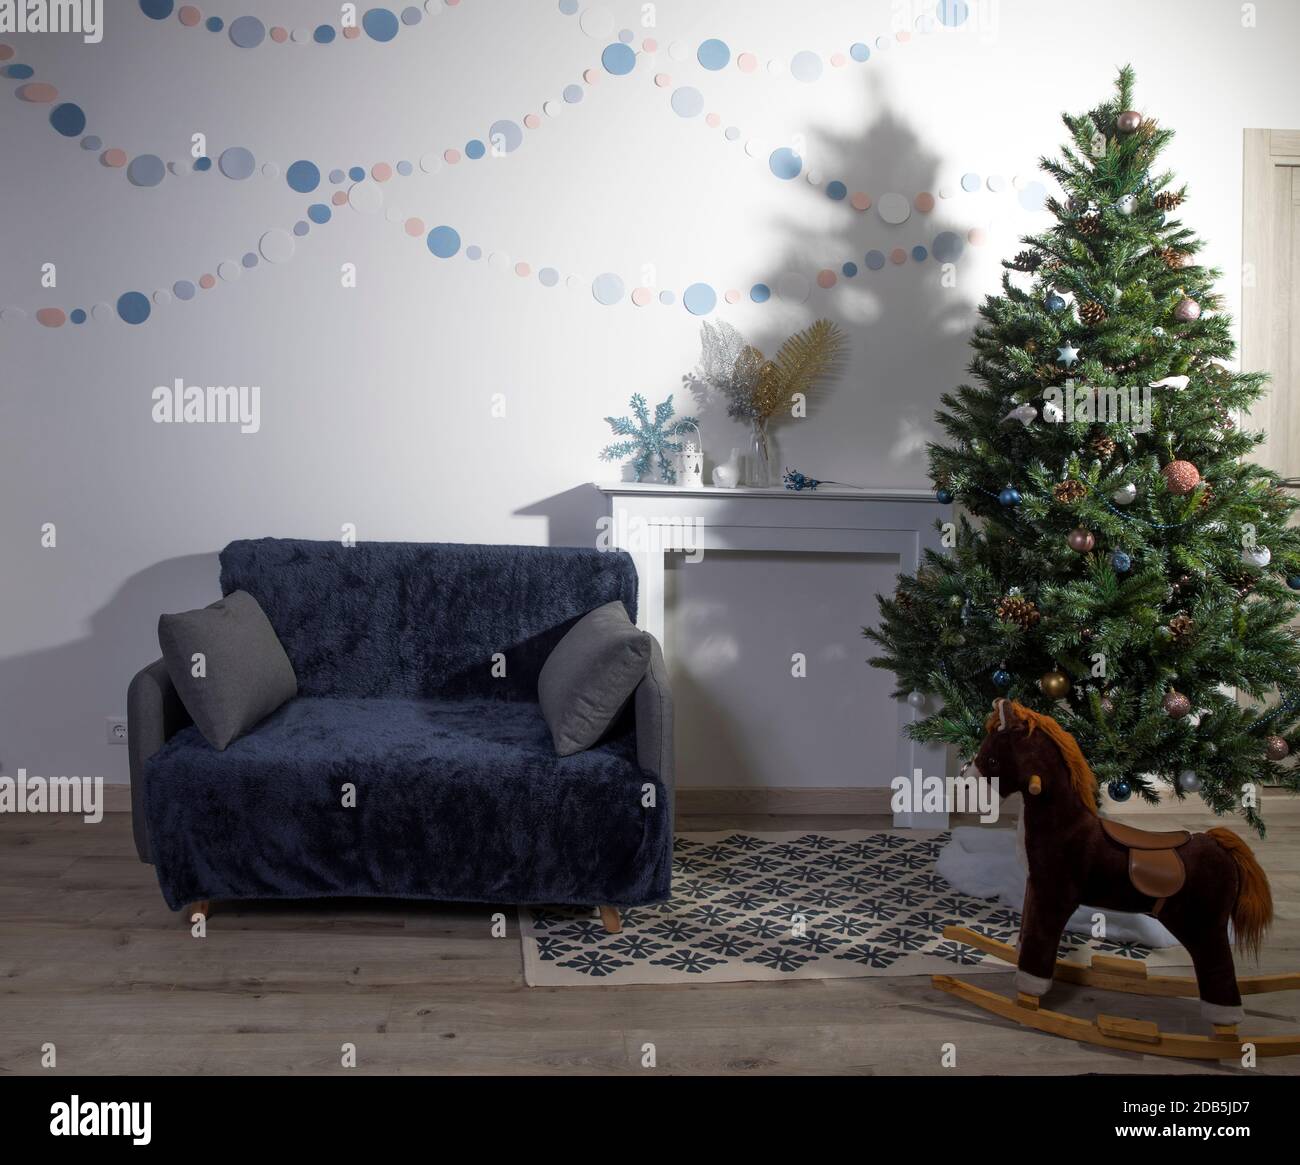 Décoration intérieure de Noël aux couleurs scandinaves blanches, un sapin de Noël décoré près d'une fausse cheminée, un cheval à bascule et un canapé. Papier garlan Banque D'Images